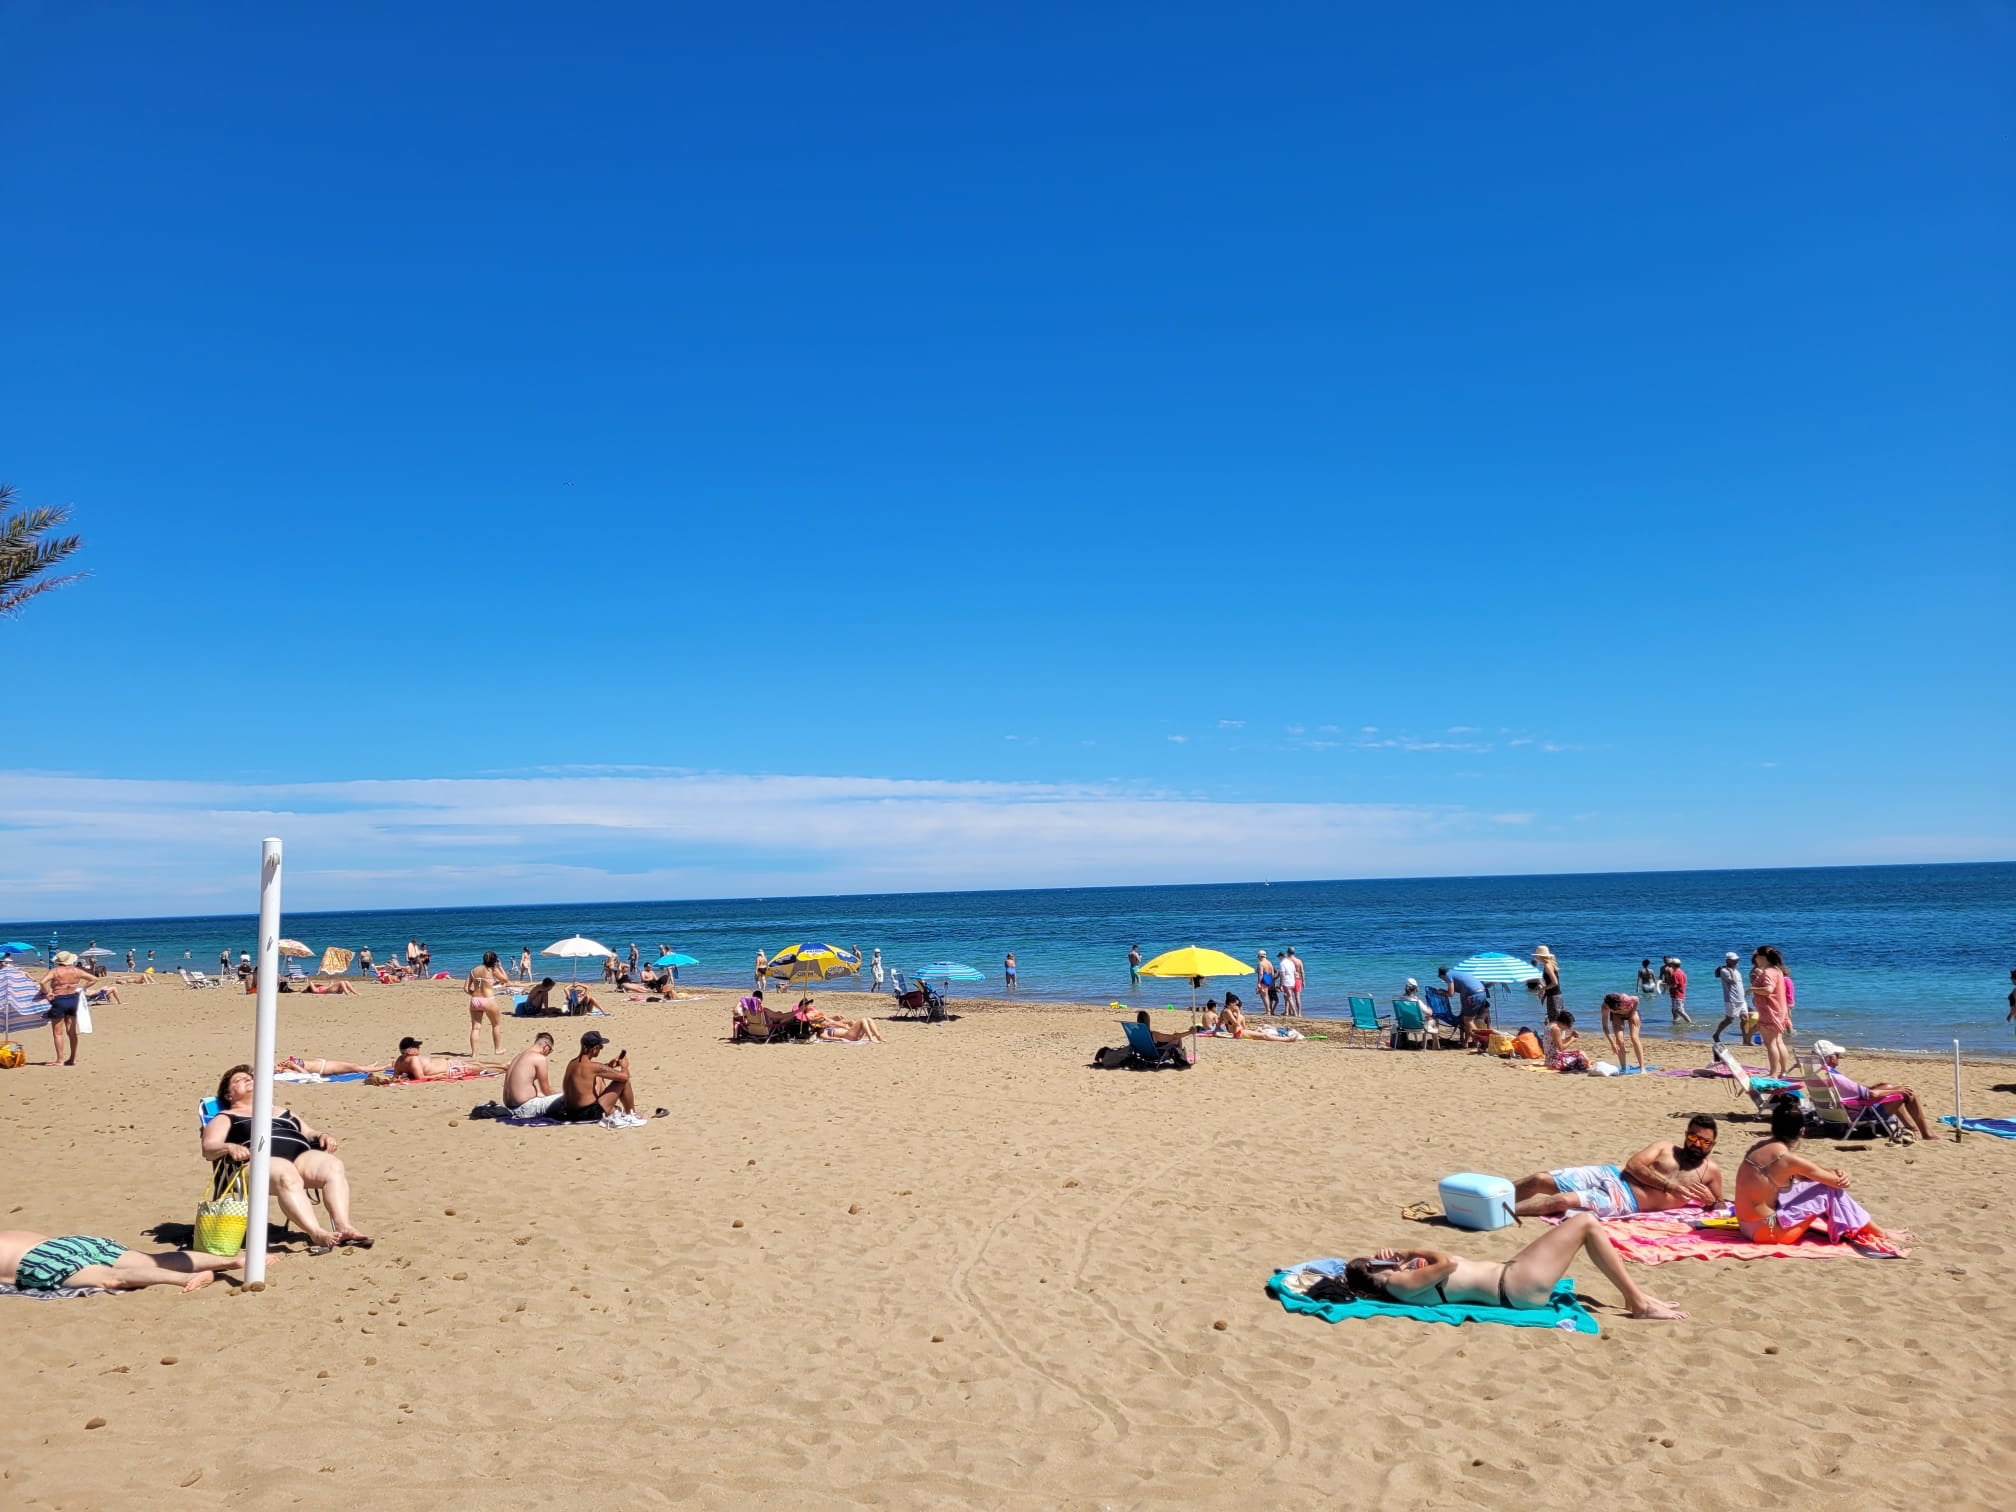 Gente disfrutando del buen tiempo en la playa